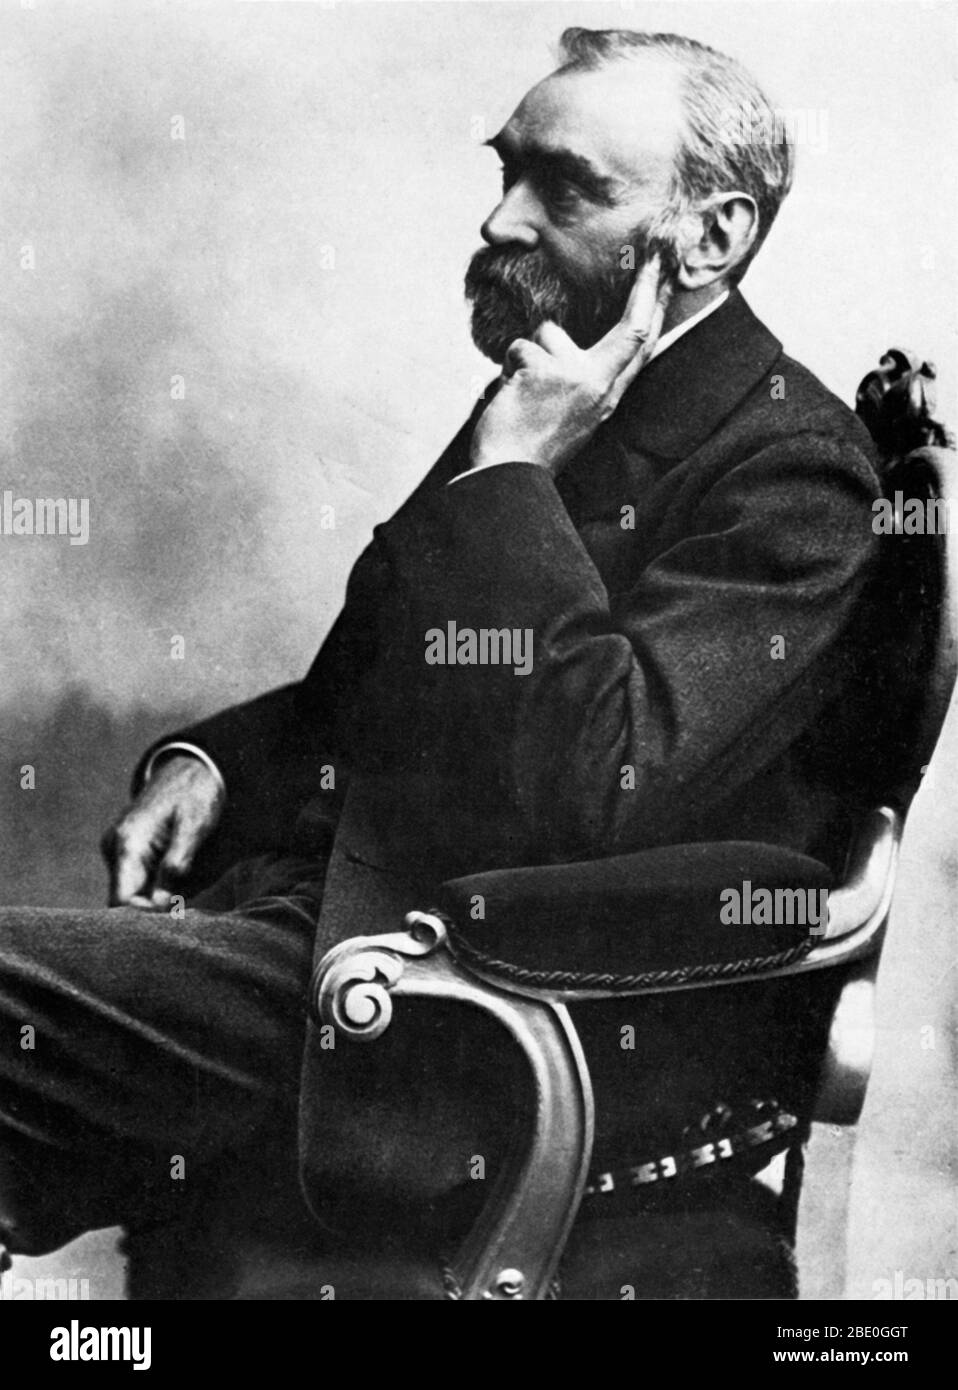 Alfred Bernhard Nobel (21. Oktober 1833 - 10. Dezember 1896) war ein schwedischer Chemiker und Erfinder. Er studierte Sprengstoffe wie Nitroglycerin und entdeckte Wege, um sie sicherer zu nutzen. 1867 ließ er Dynamit patentieren. Er produzierte auch leistungsfähigere Sprengstoffe, wie die 1876 patentierte Gelatine (Gelignite). Diese Patente und seine anderen Geschäfte machten ihn extrem wohlhabend. Als er 1896 starb, richtete sein Wille an, dass der Großteil seines Vermögens zur Einrichtung der Nobelpreise verwendet werden sollte. Diese werden jährlich für herausragende Beiträge in Physik, Chemie, Physiologie oder Medizin, Litera vergeben Stockfoto